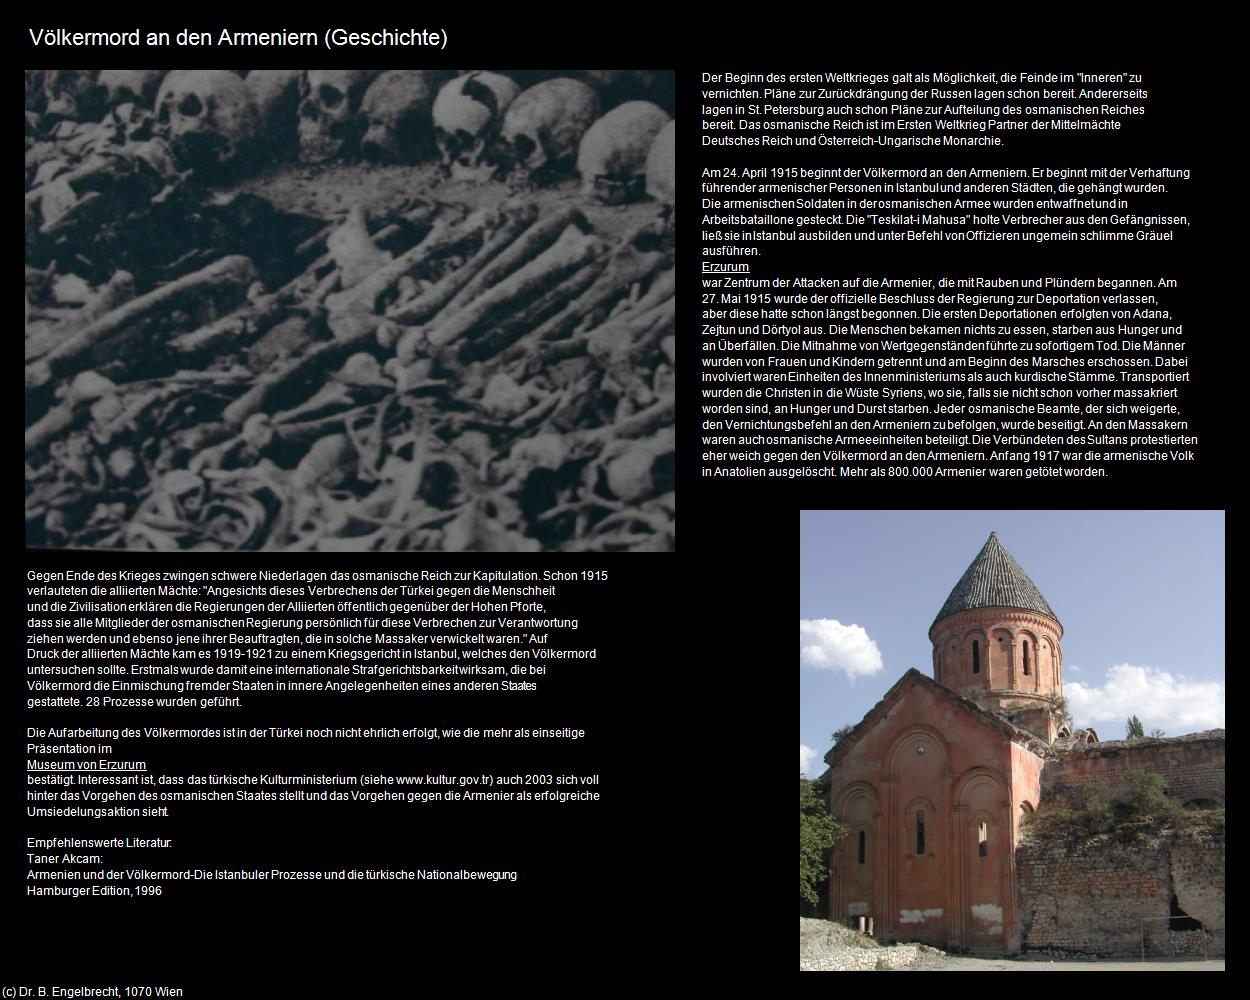 Völkermord an den Armeniern        (Türkei-Geschichte) in TÜRKEI(c)B.Engelbrecht